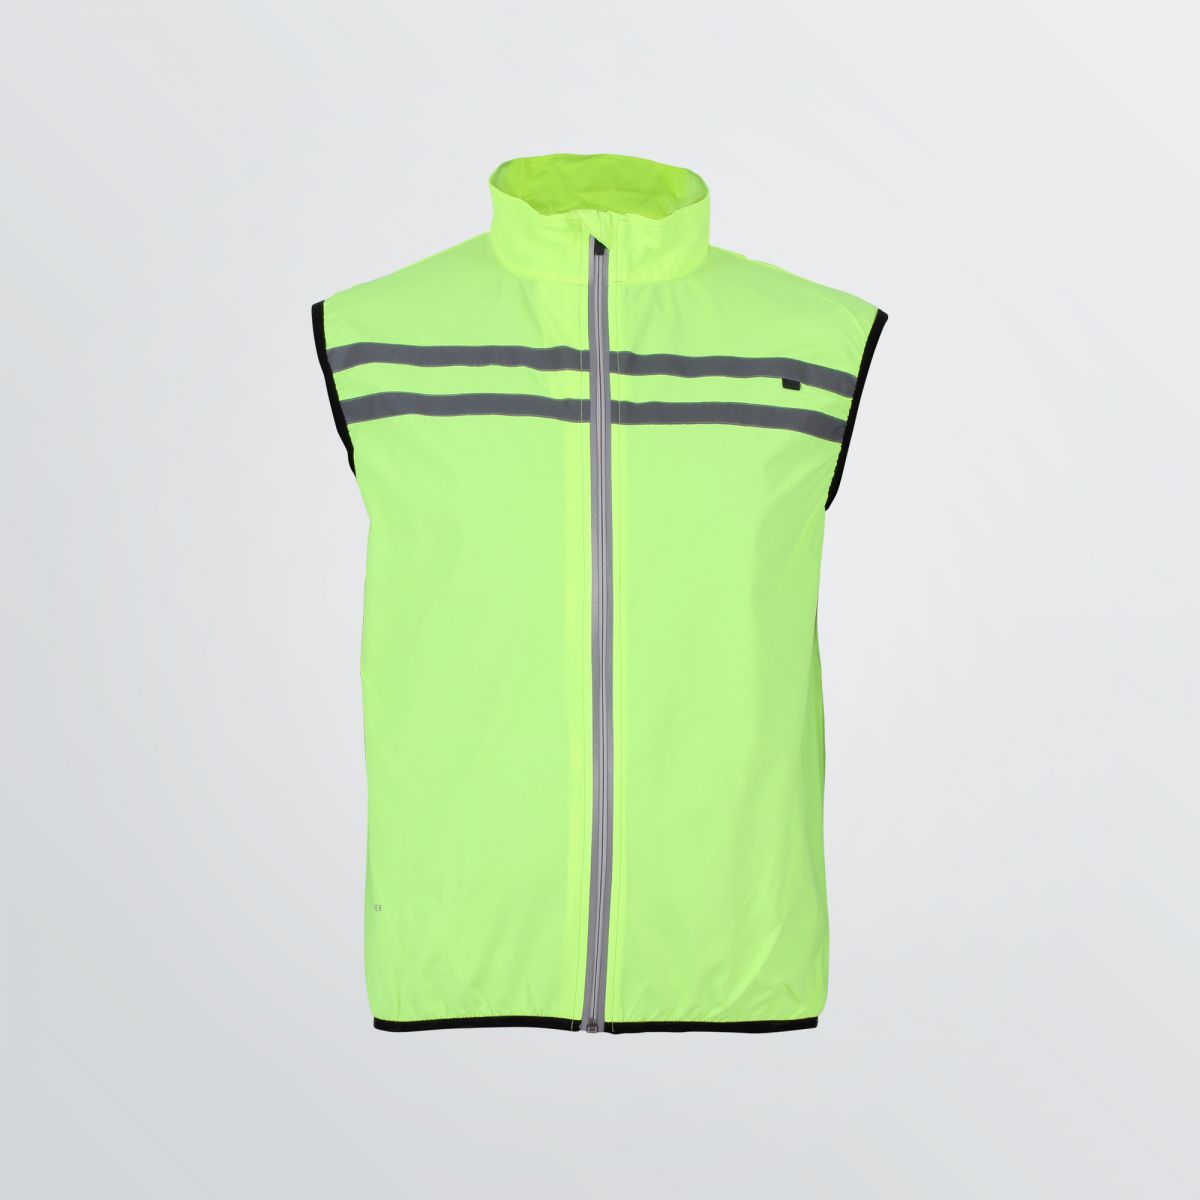 Atmungsaktive Basic Sport Vest zum Individualisieren als Produktbeispiel in neongelber Farbe mit Reflektoren - Frontansicht